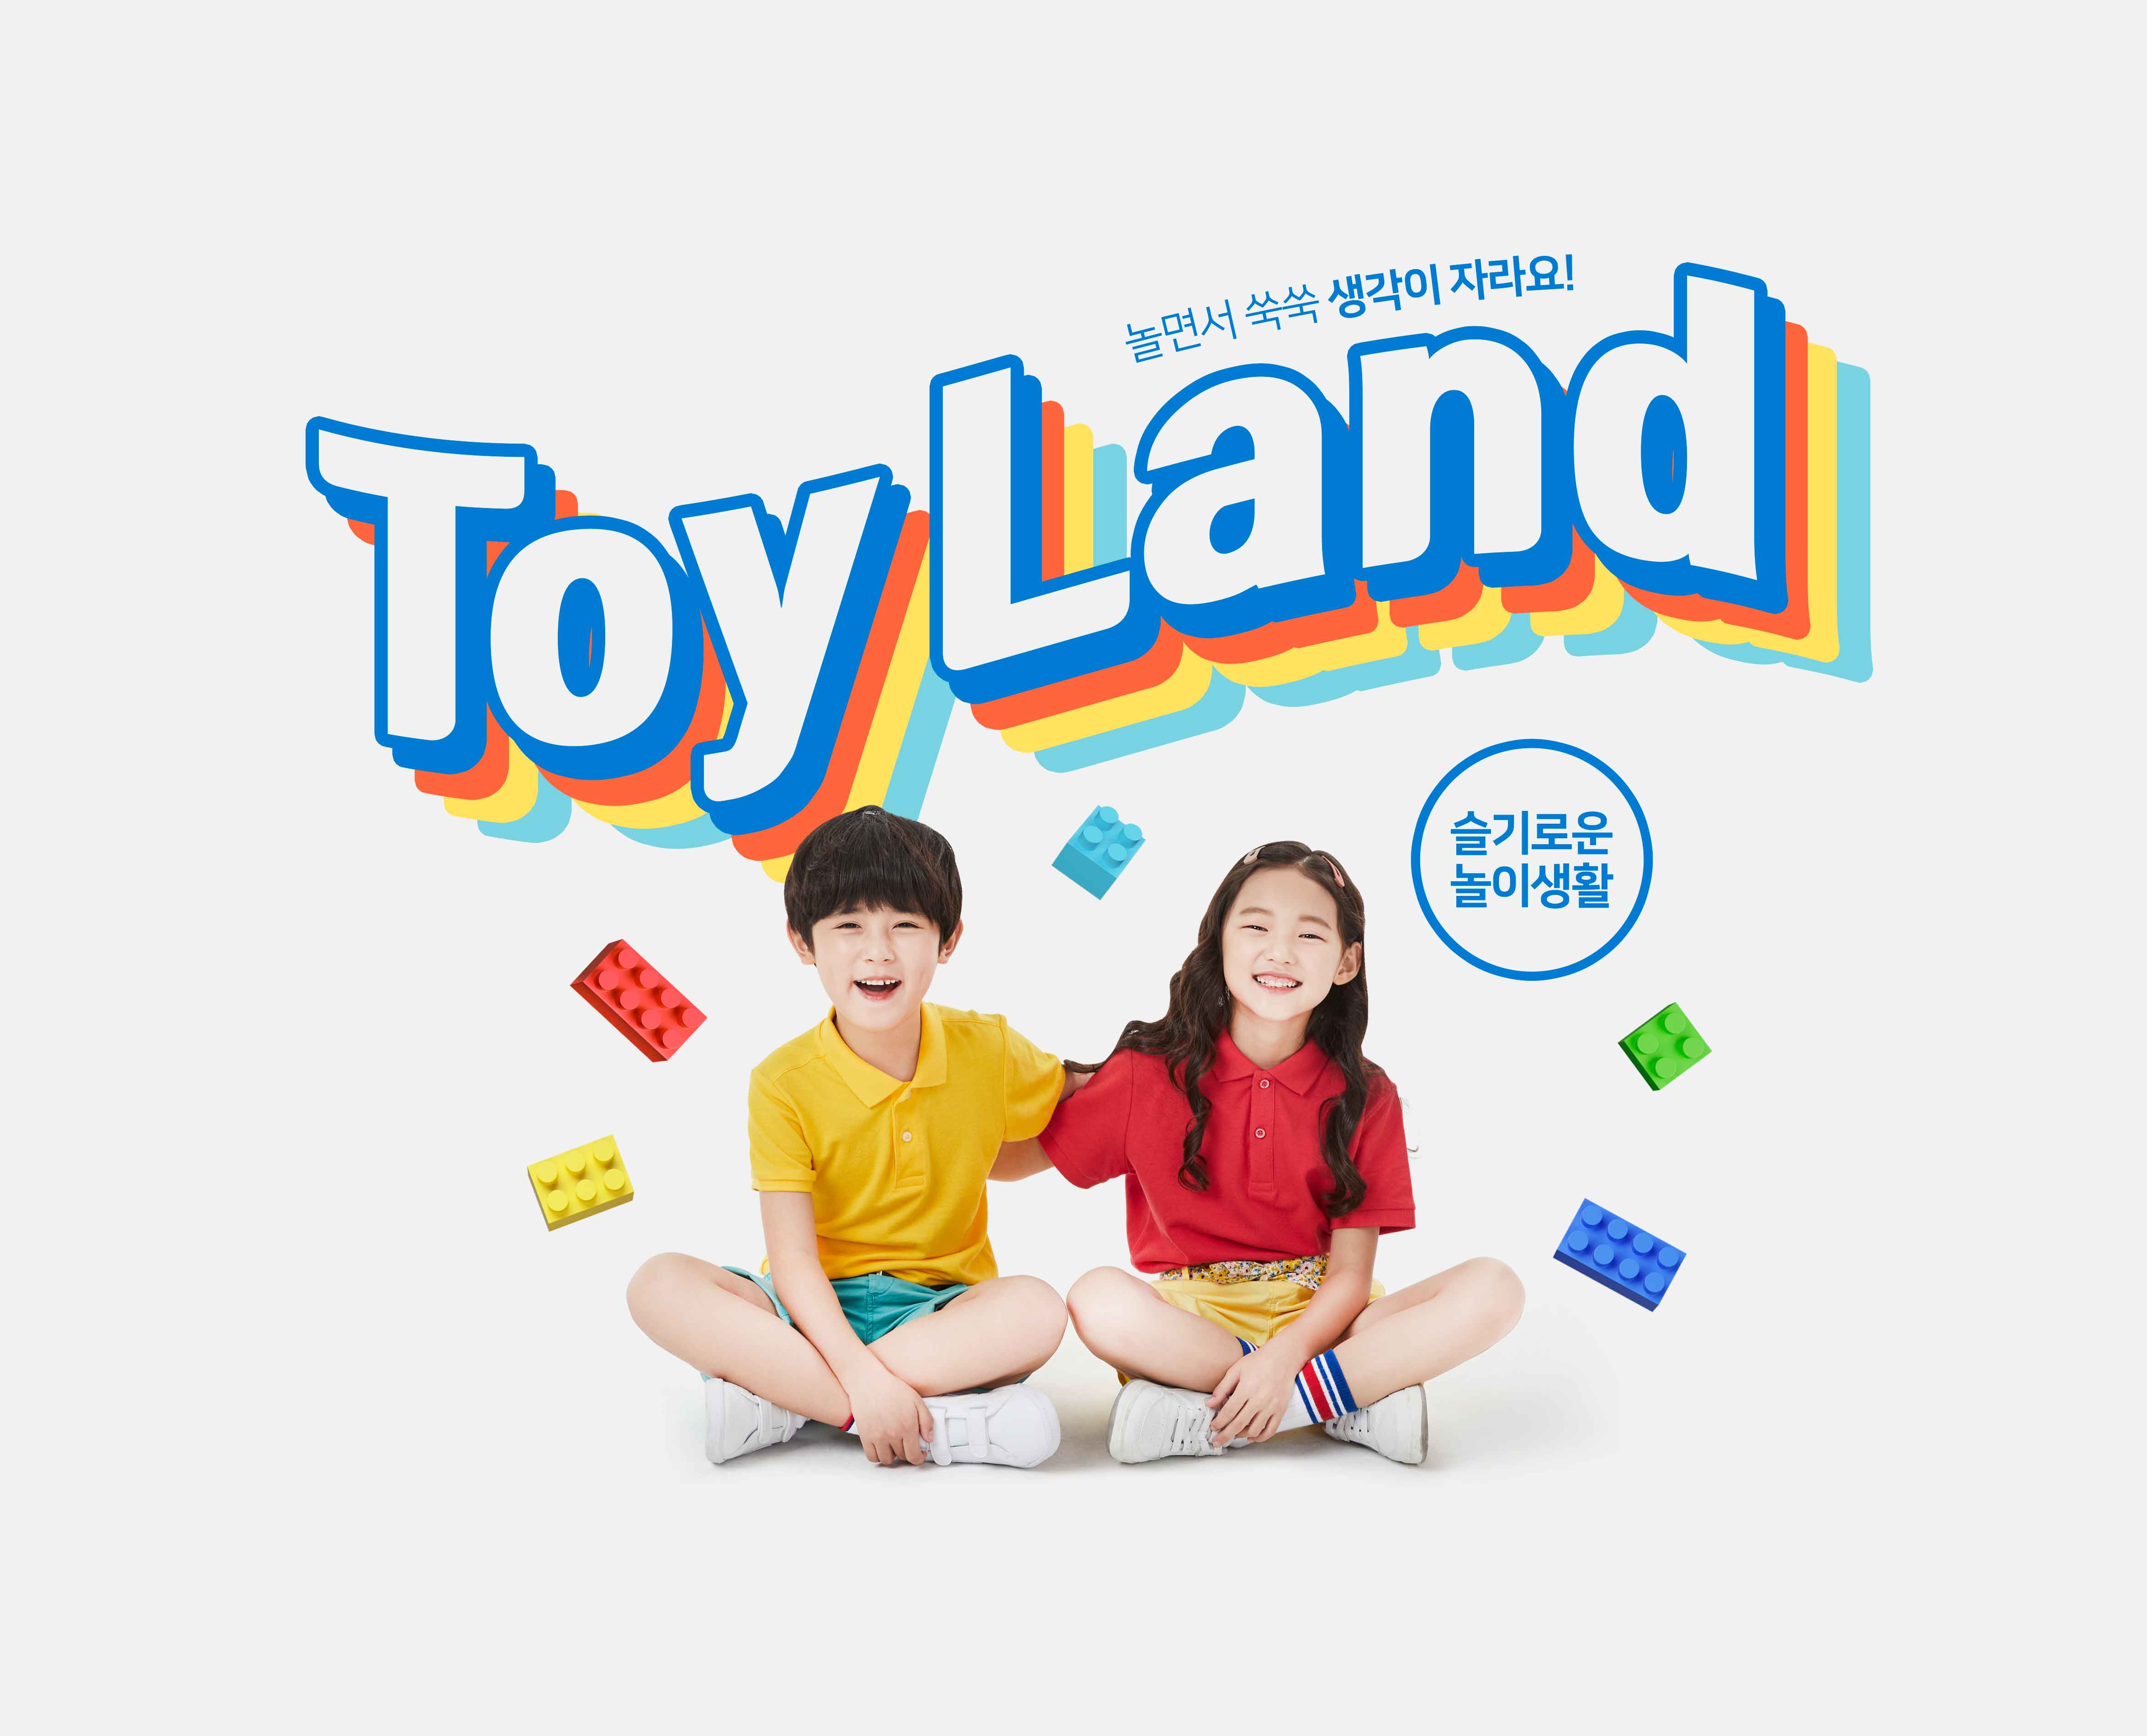 益智积木玩具游戏儿童成长主题海报PSD素材蚂蚁素材精选韩国素材插图